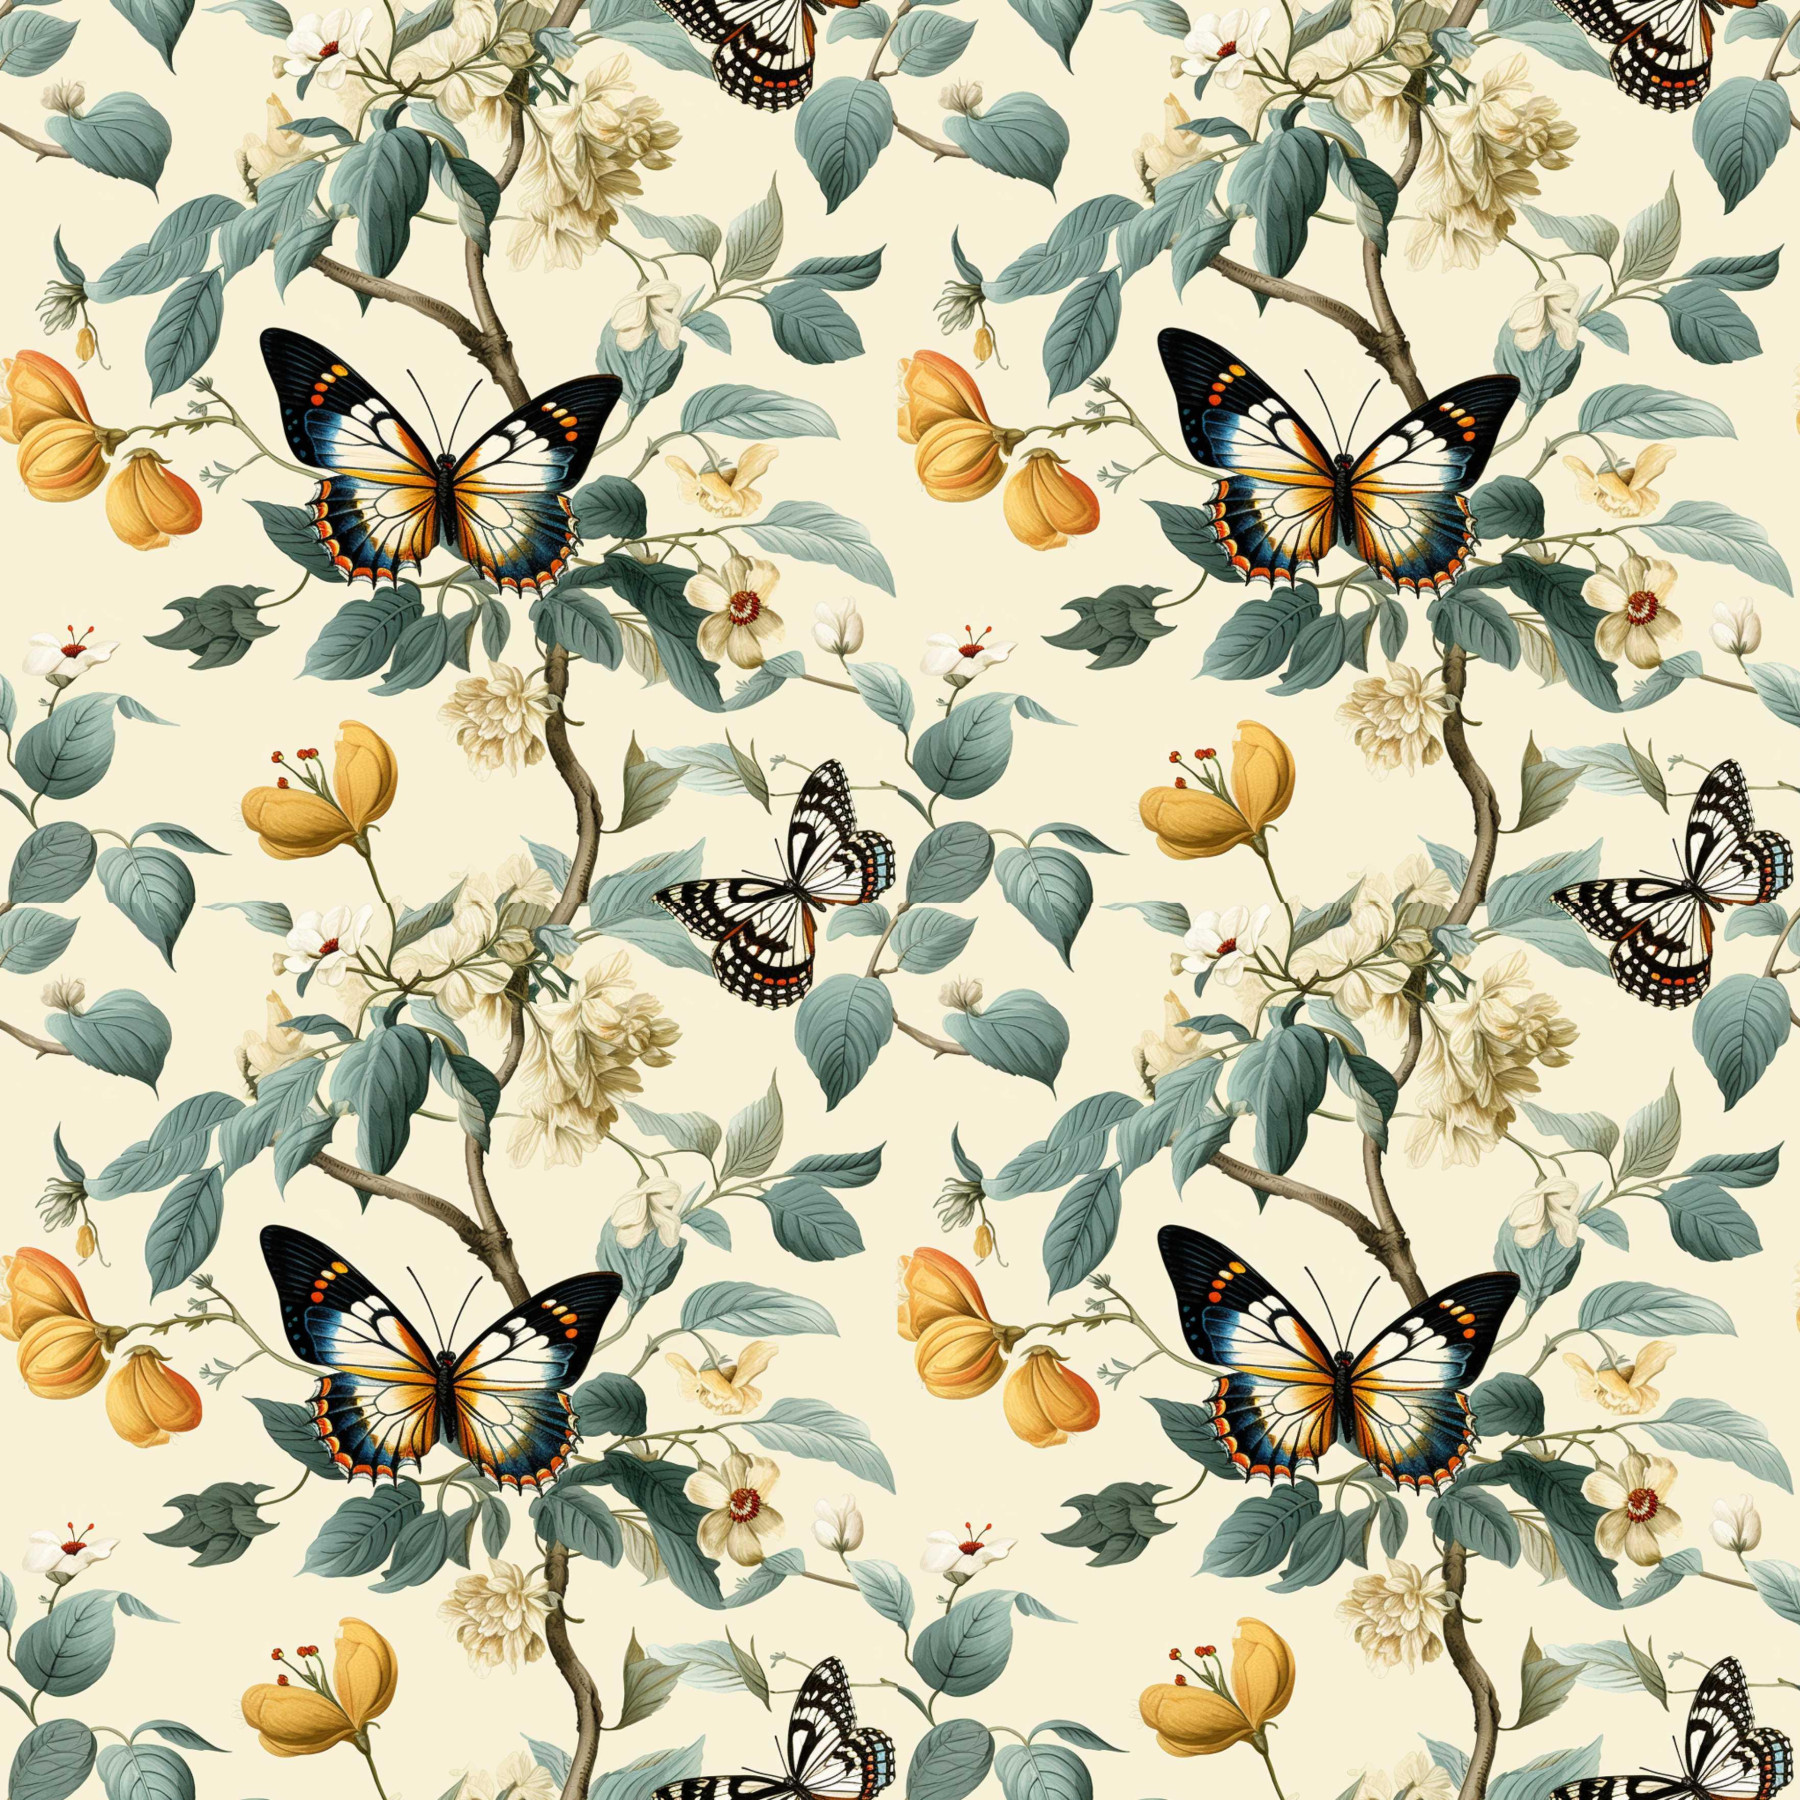 Butterfly & Flowers wz.2 - Waterproof woven fabric